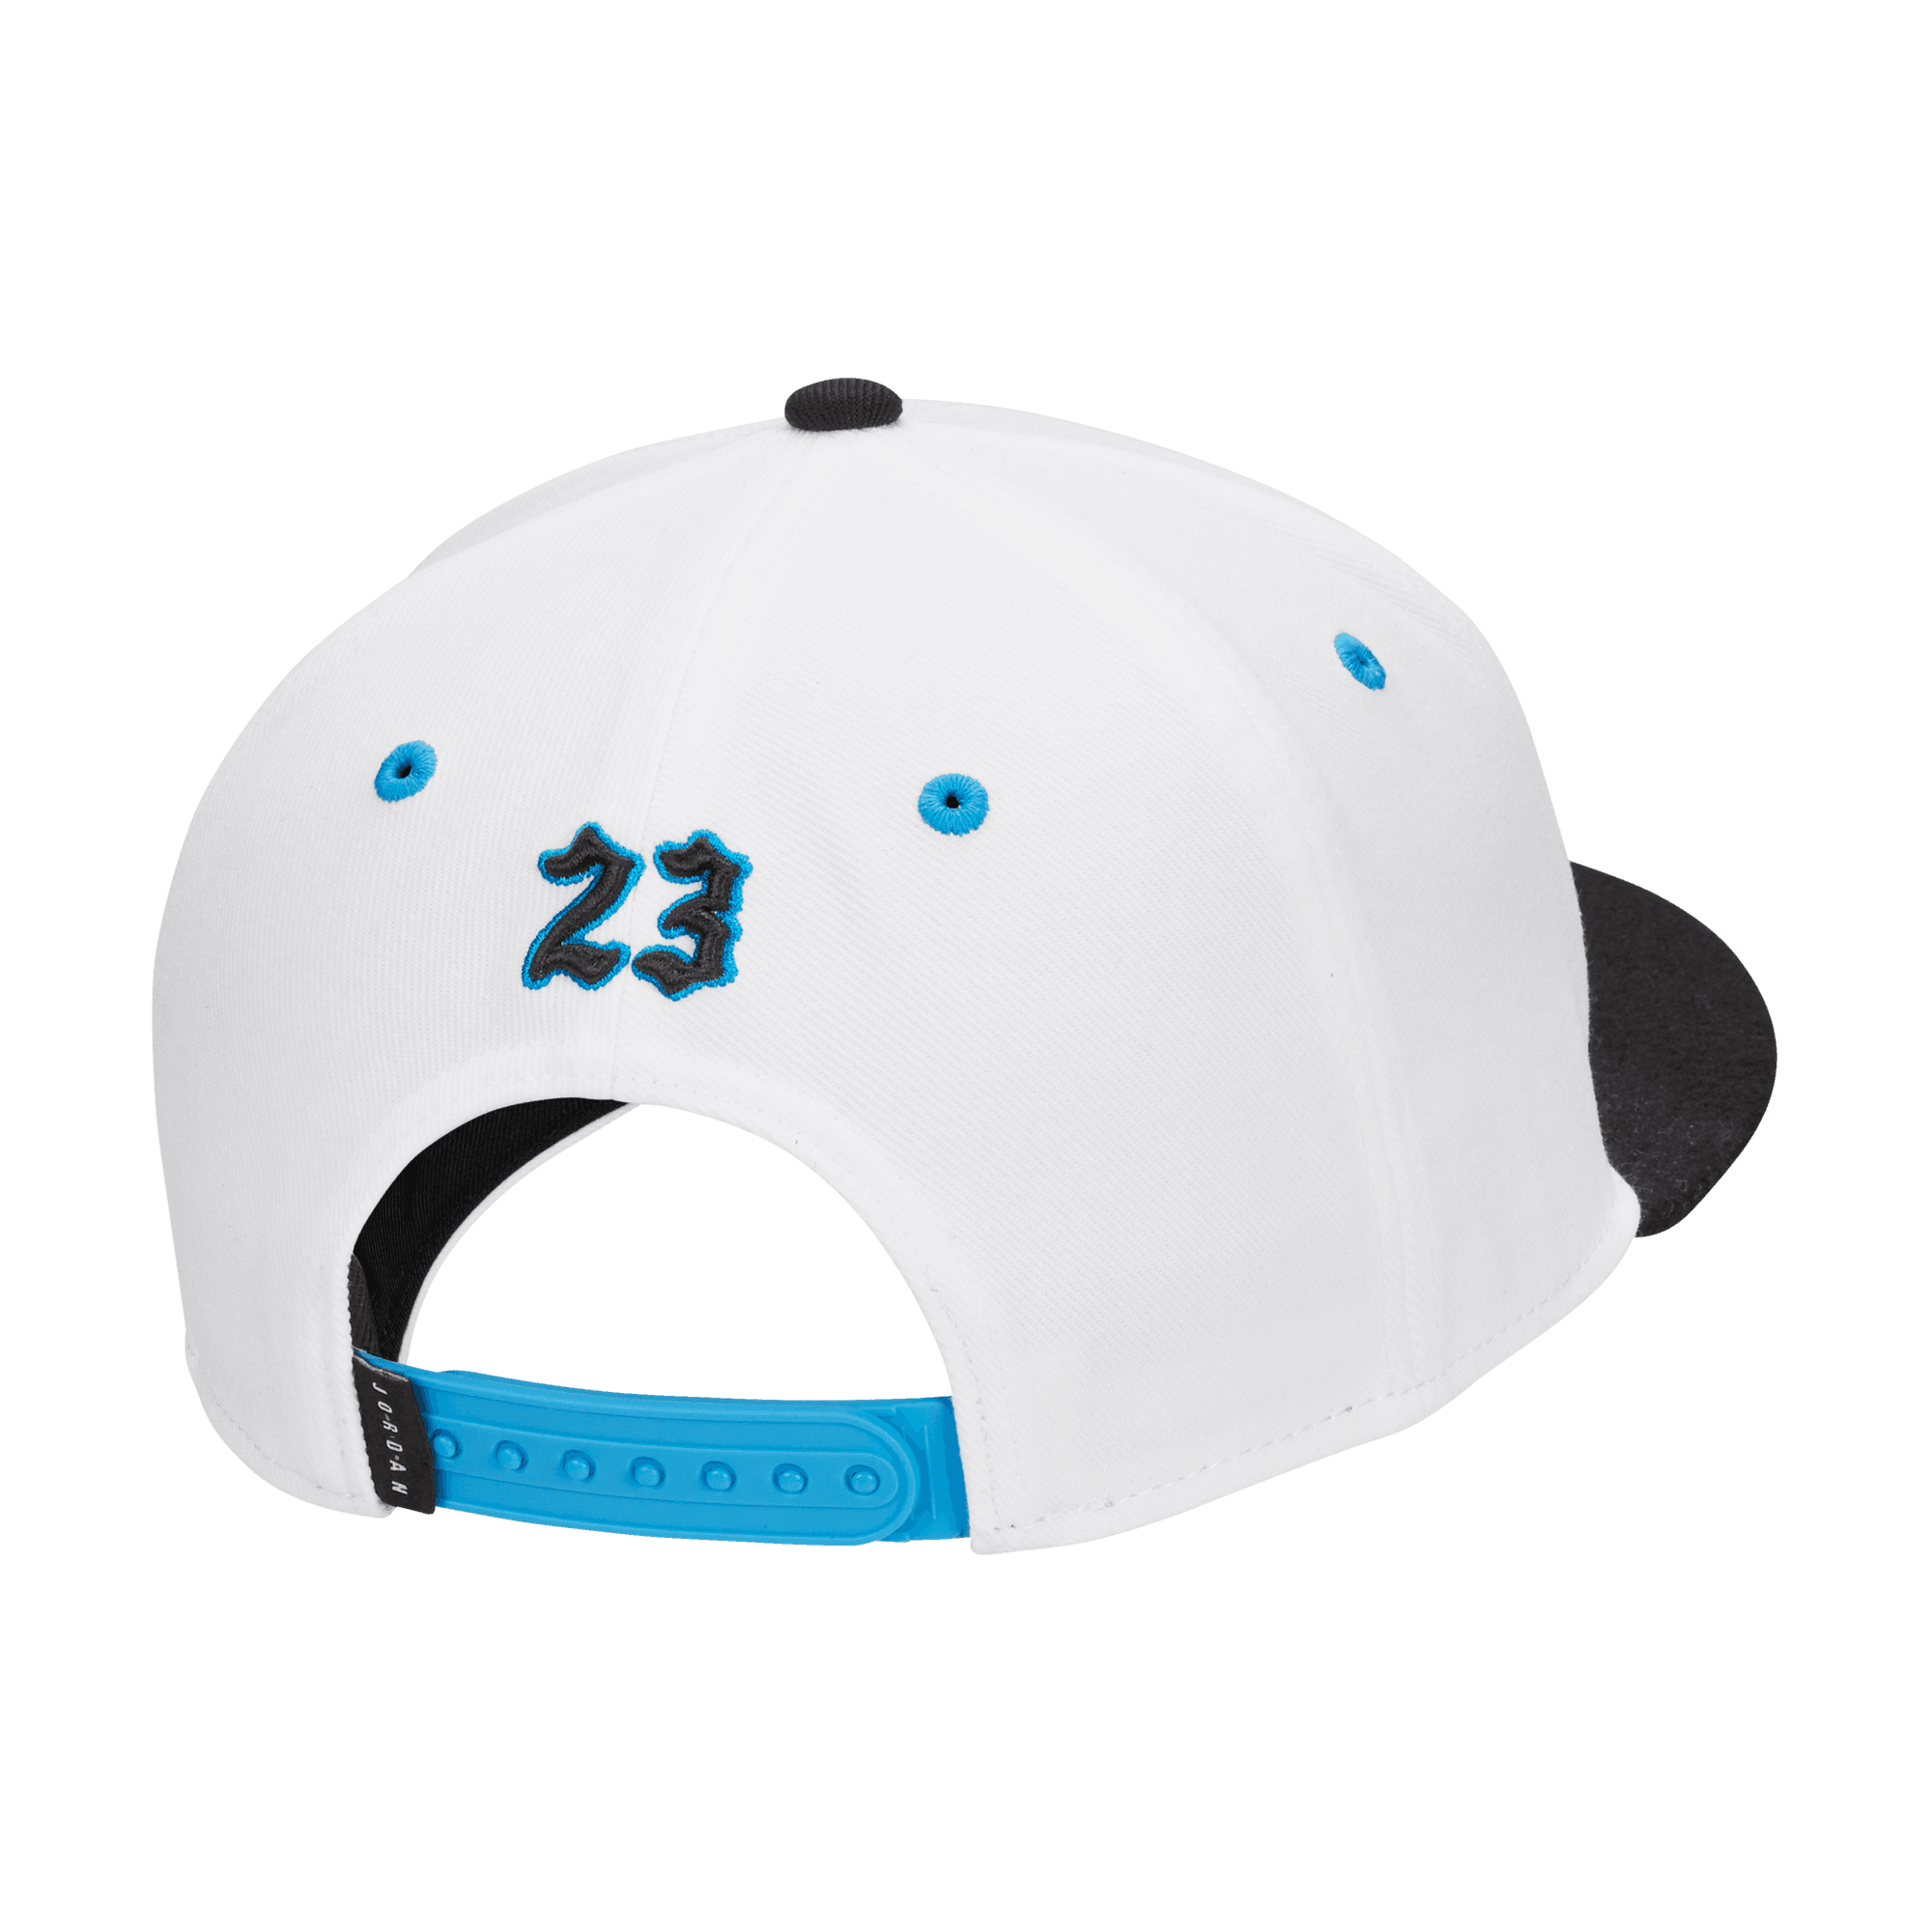 Jordan Brand Unisex Pro MVP Adjustable Hat - White